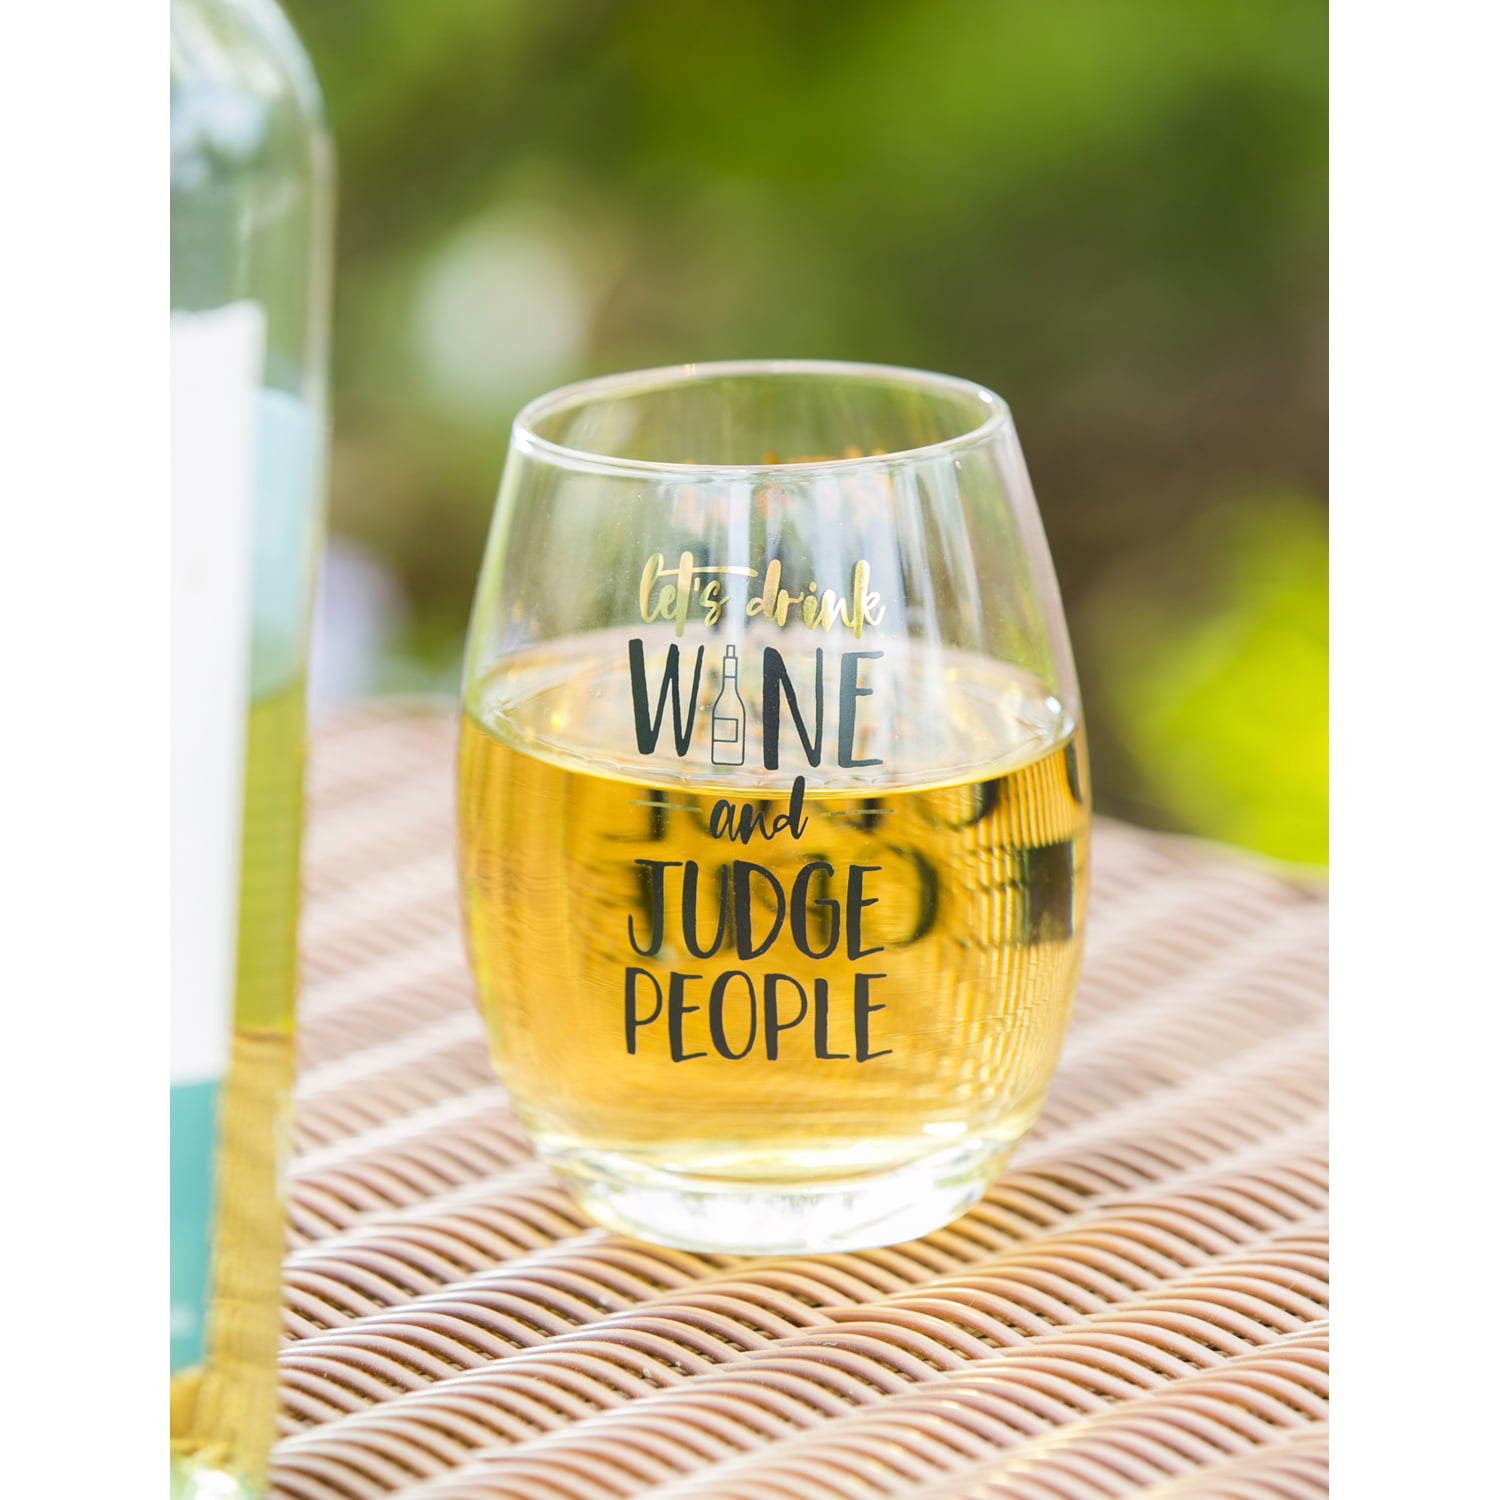 Vinglacé: Stemless Wine Glass - White